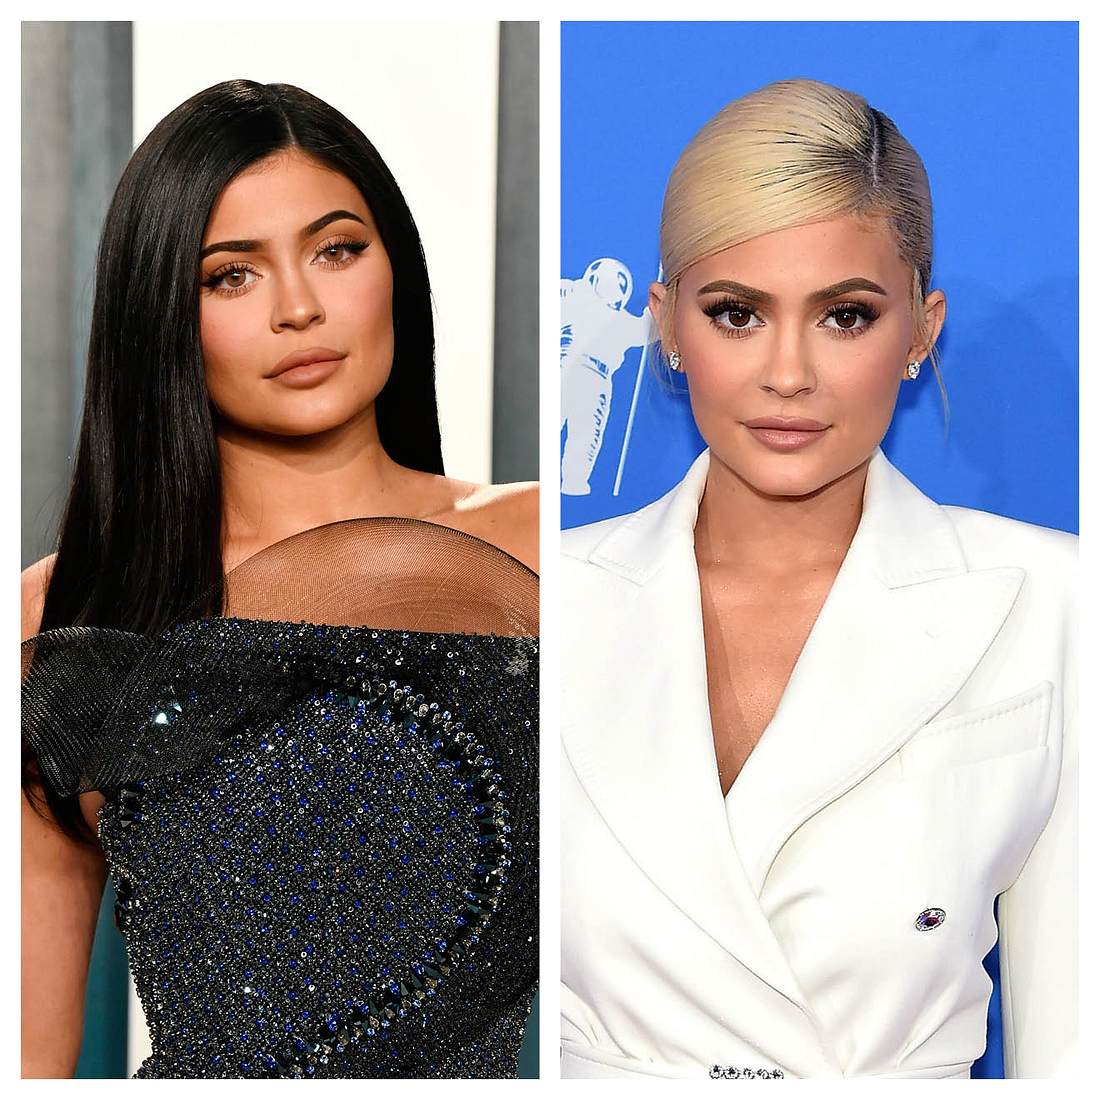 Haarfarben Wechsel der Stars Kylie Jenner